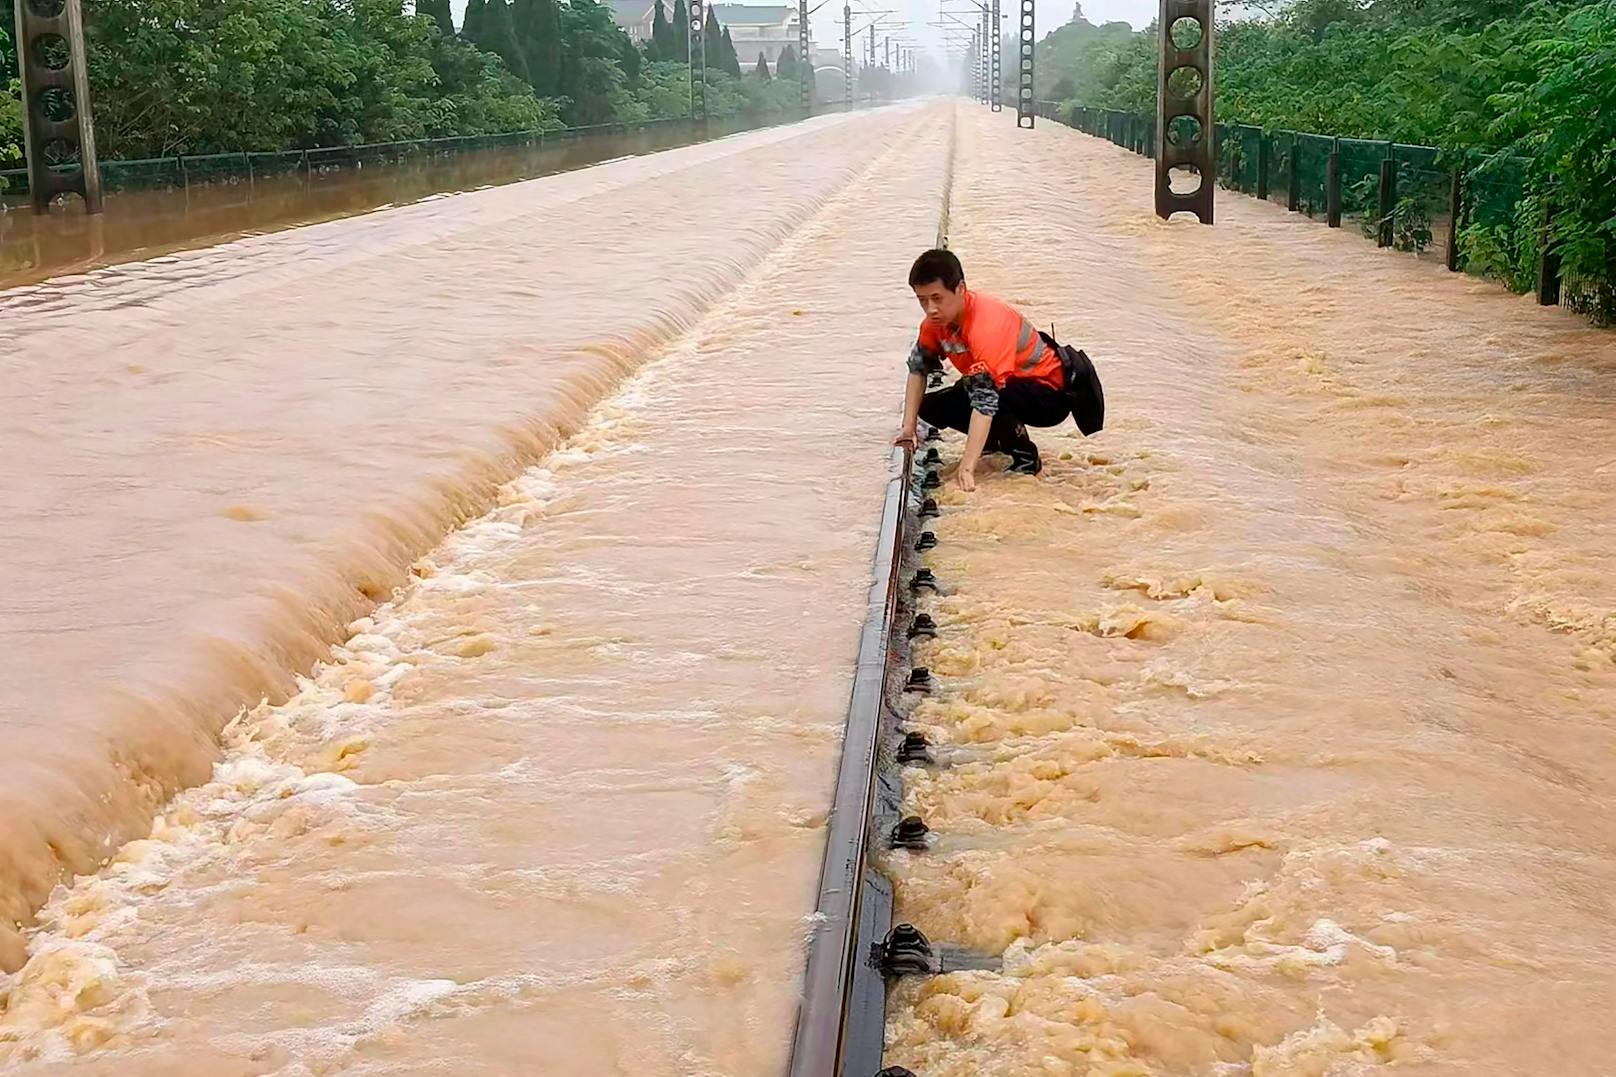 Überschwemmungen – Besonders arme Länder betroffen